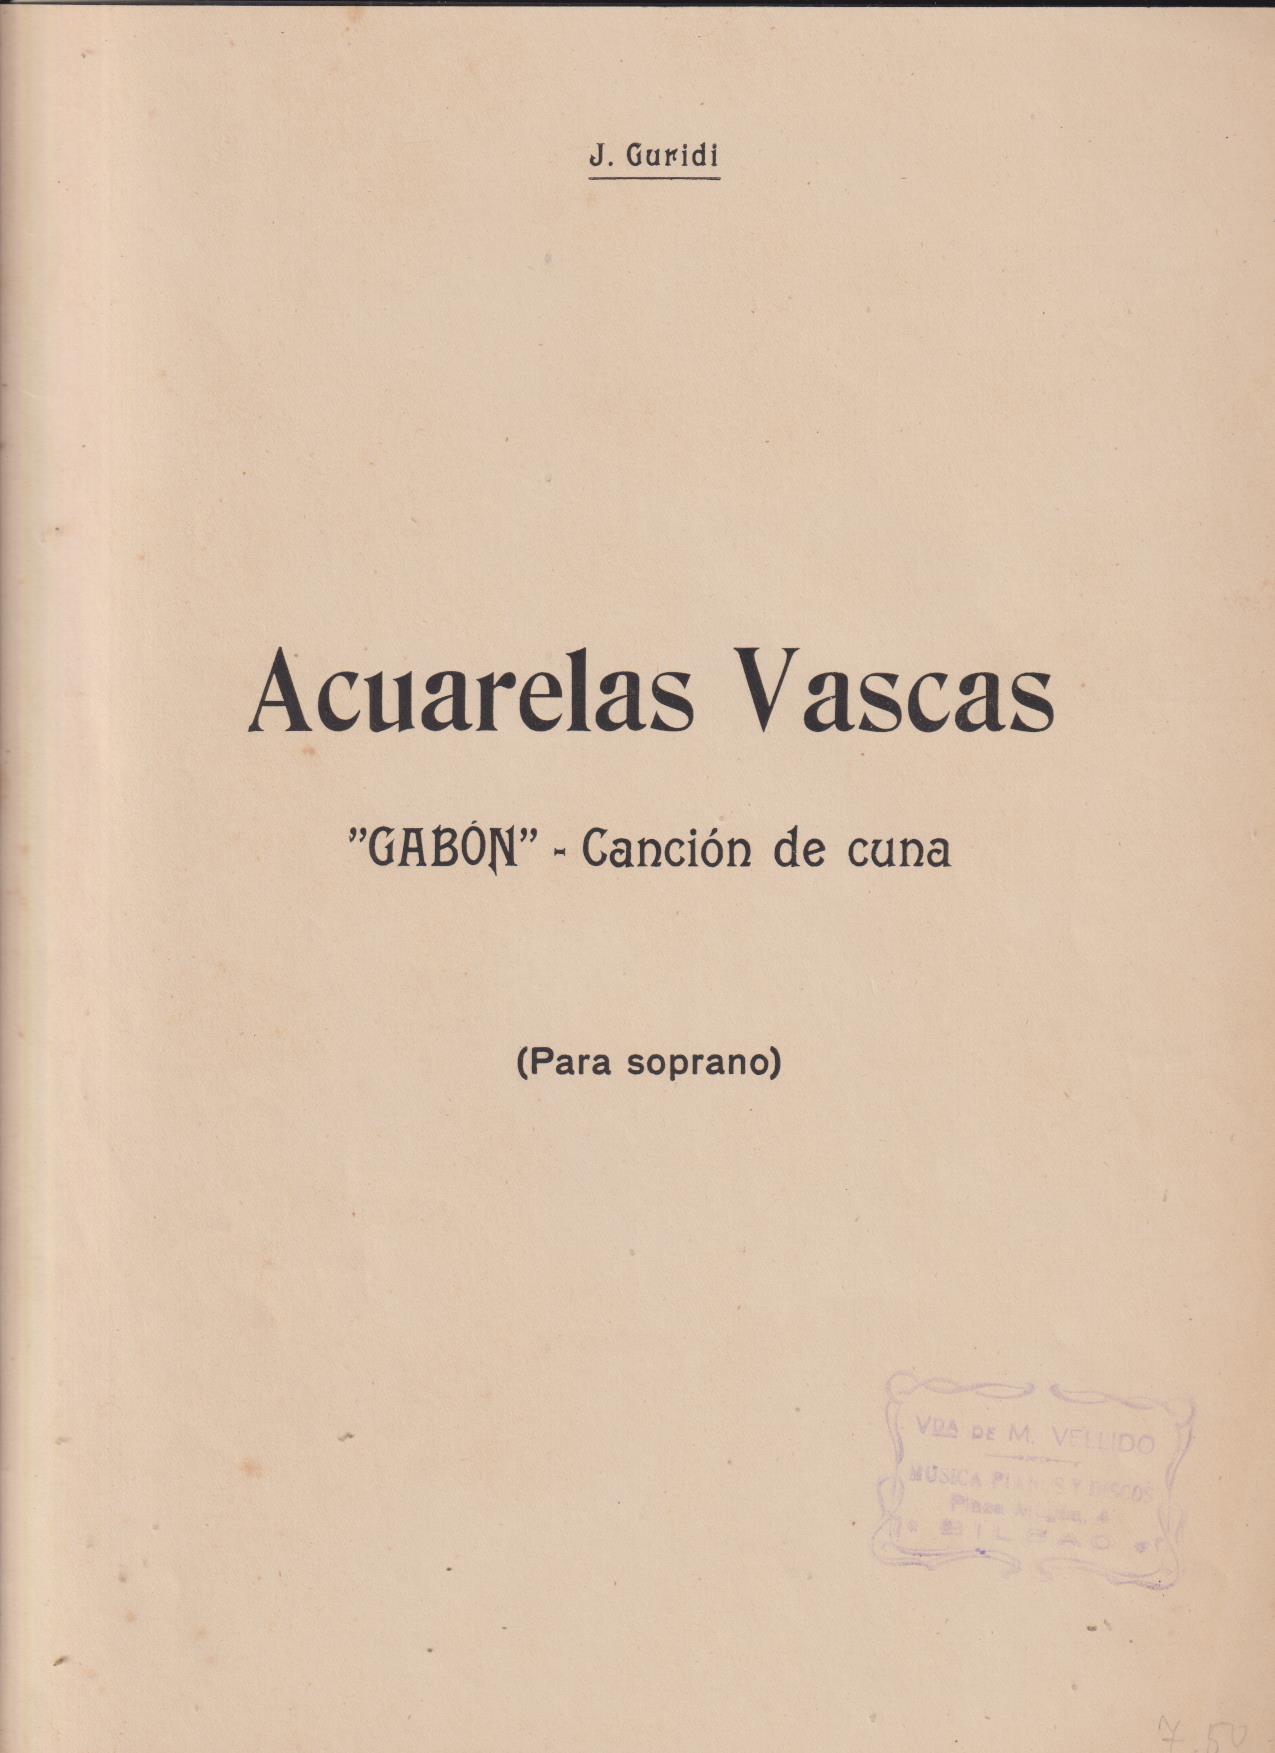 J. Guridi. Acuarelas Vascas. Gabón. Canción de Cuna. Partitura manuscrita (31x22) 4 páginas